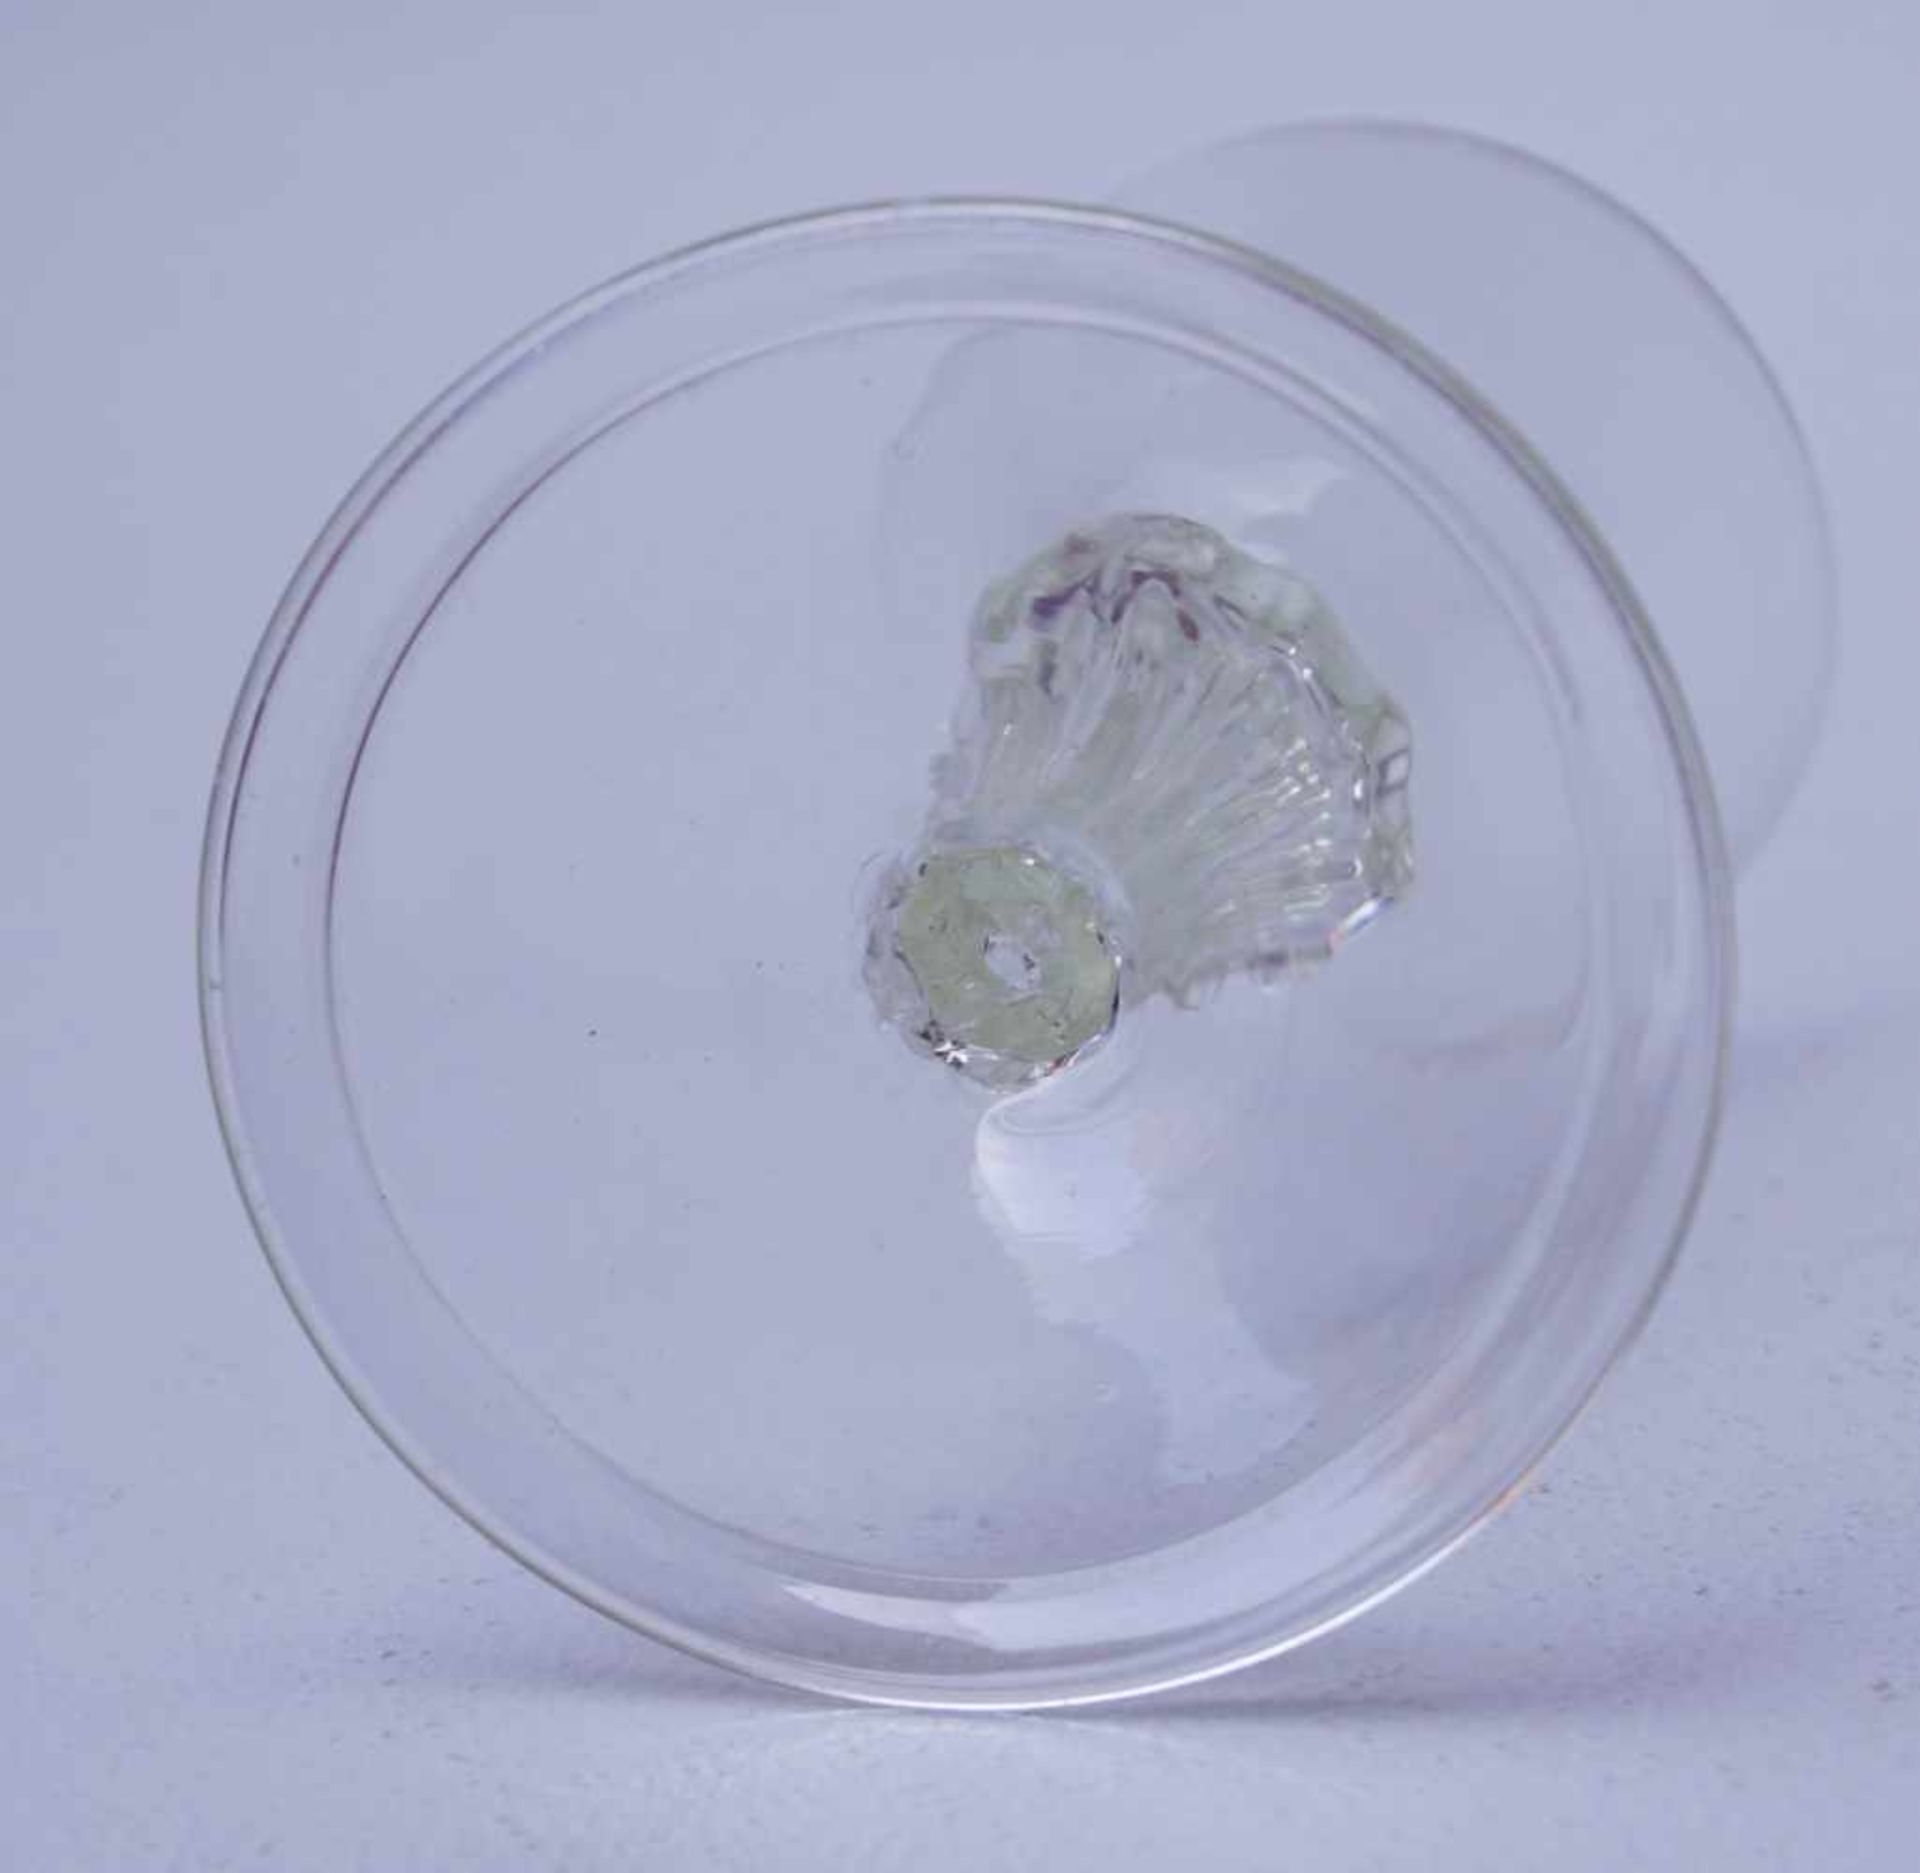 Seltenes Trichterglas des 18. Jhd.Farbloses Glas, geblasen, breiter Fuß mit umgelegtem Standring, - Bild 3 aus 3